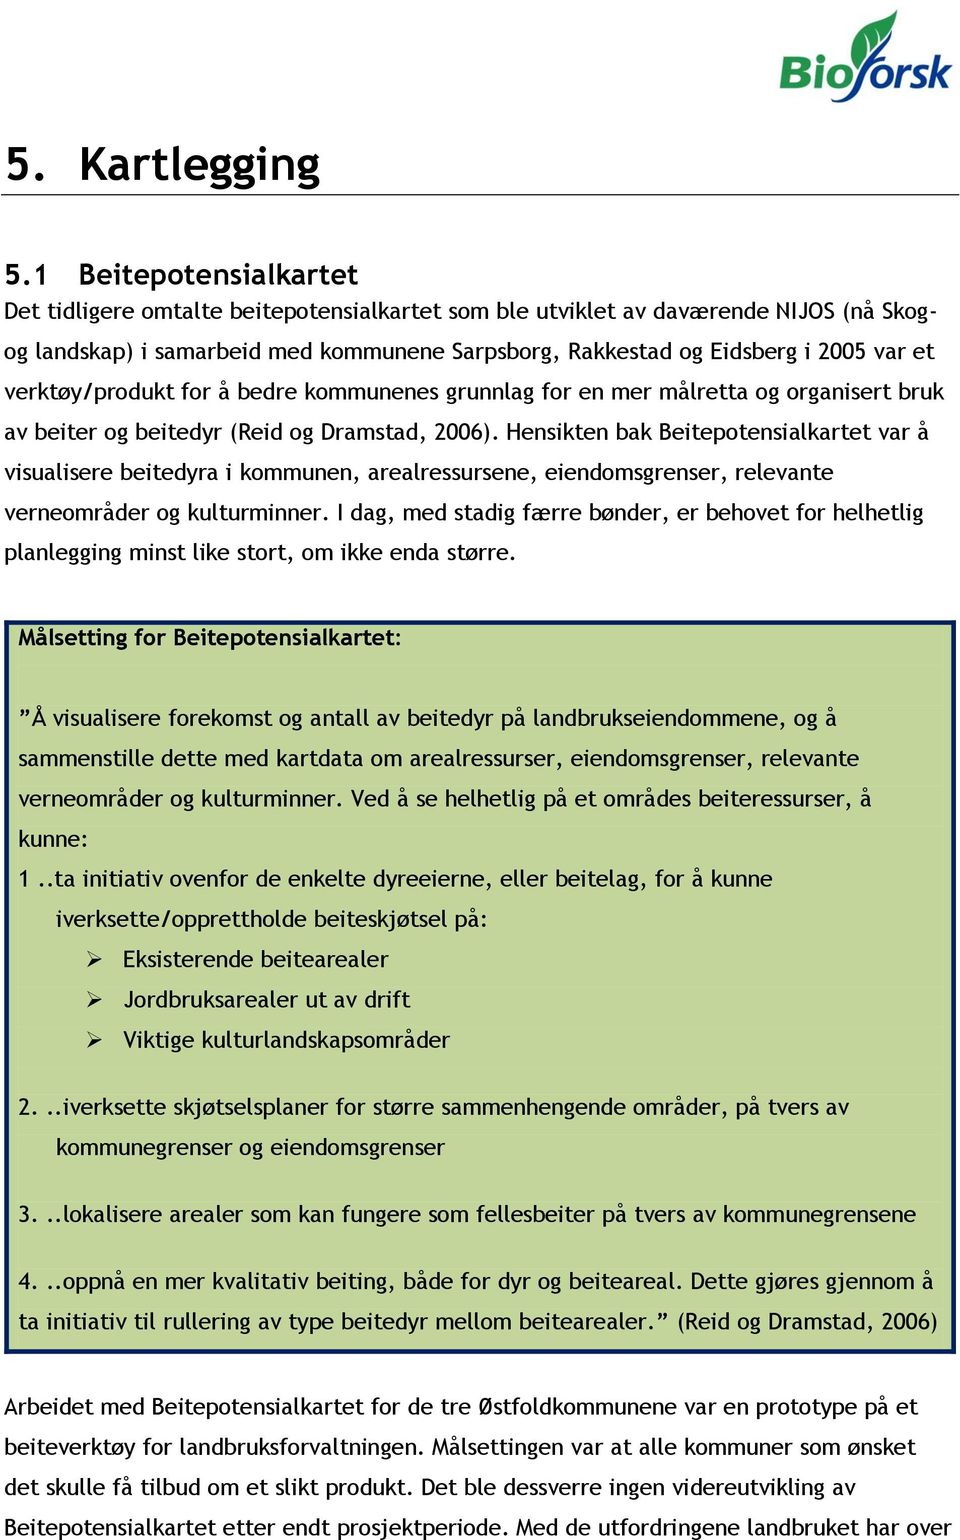 verktøy/produkt for å bedre kommunenes grunnlag for en mer målretta og organisert bruk av beiter og beitedyr (Reid og Dramstad, 2006).